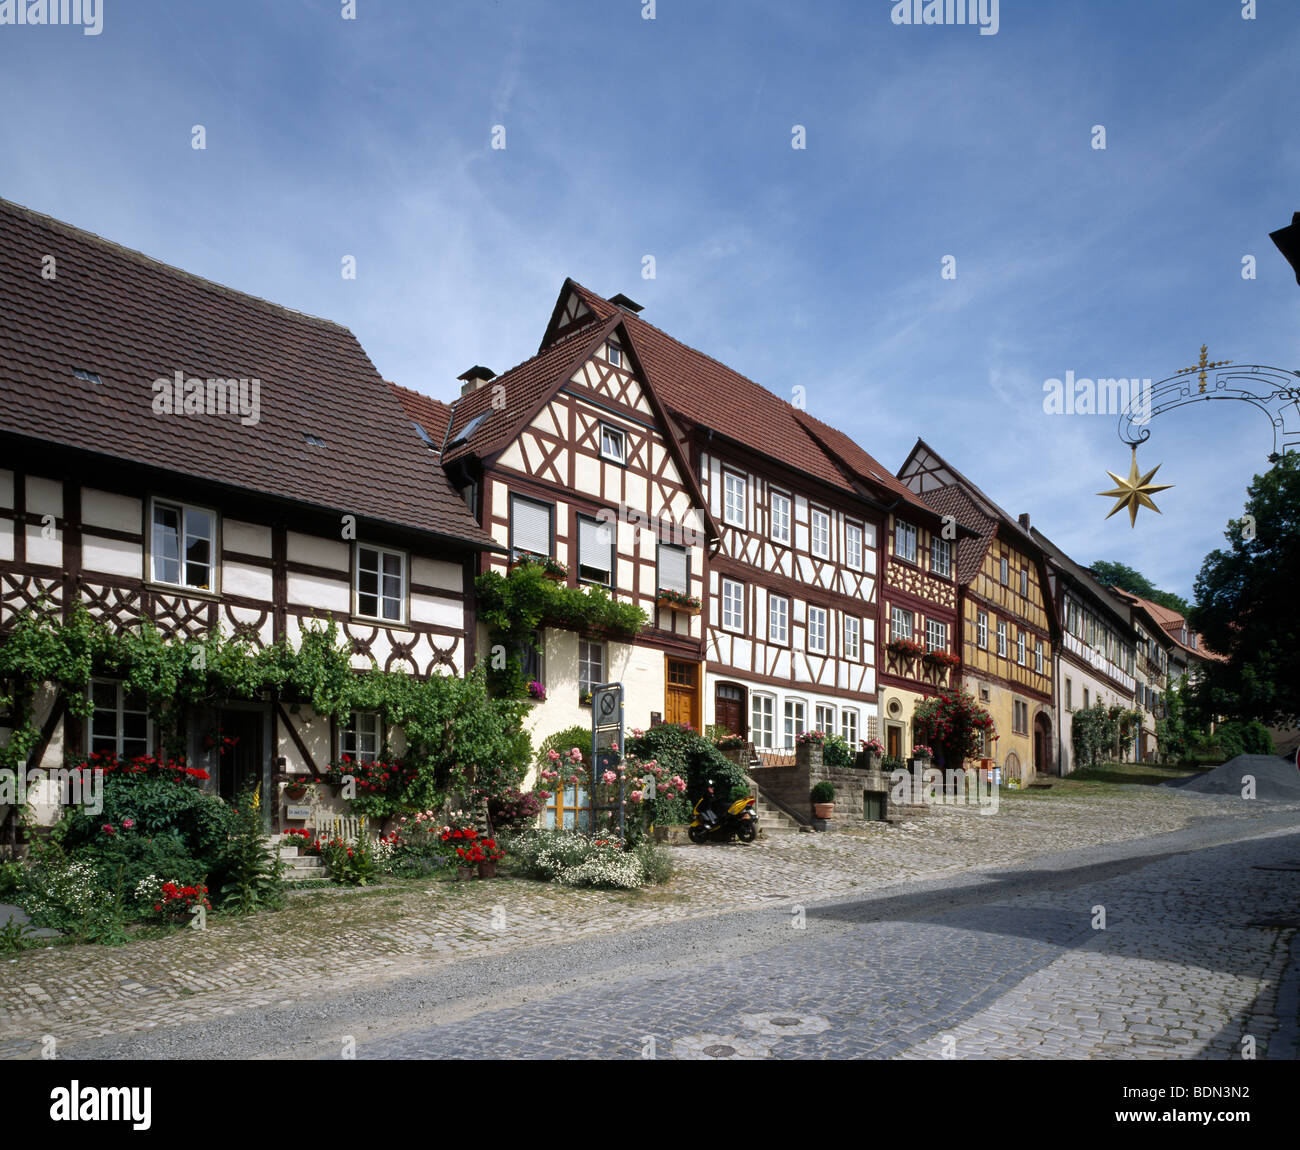 Königsberg in Bayern, Fachwerkhäuser am Salzmarkt Stock Photo